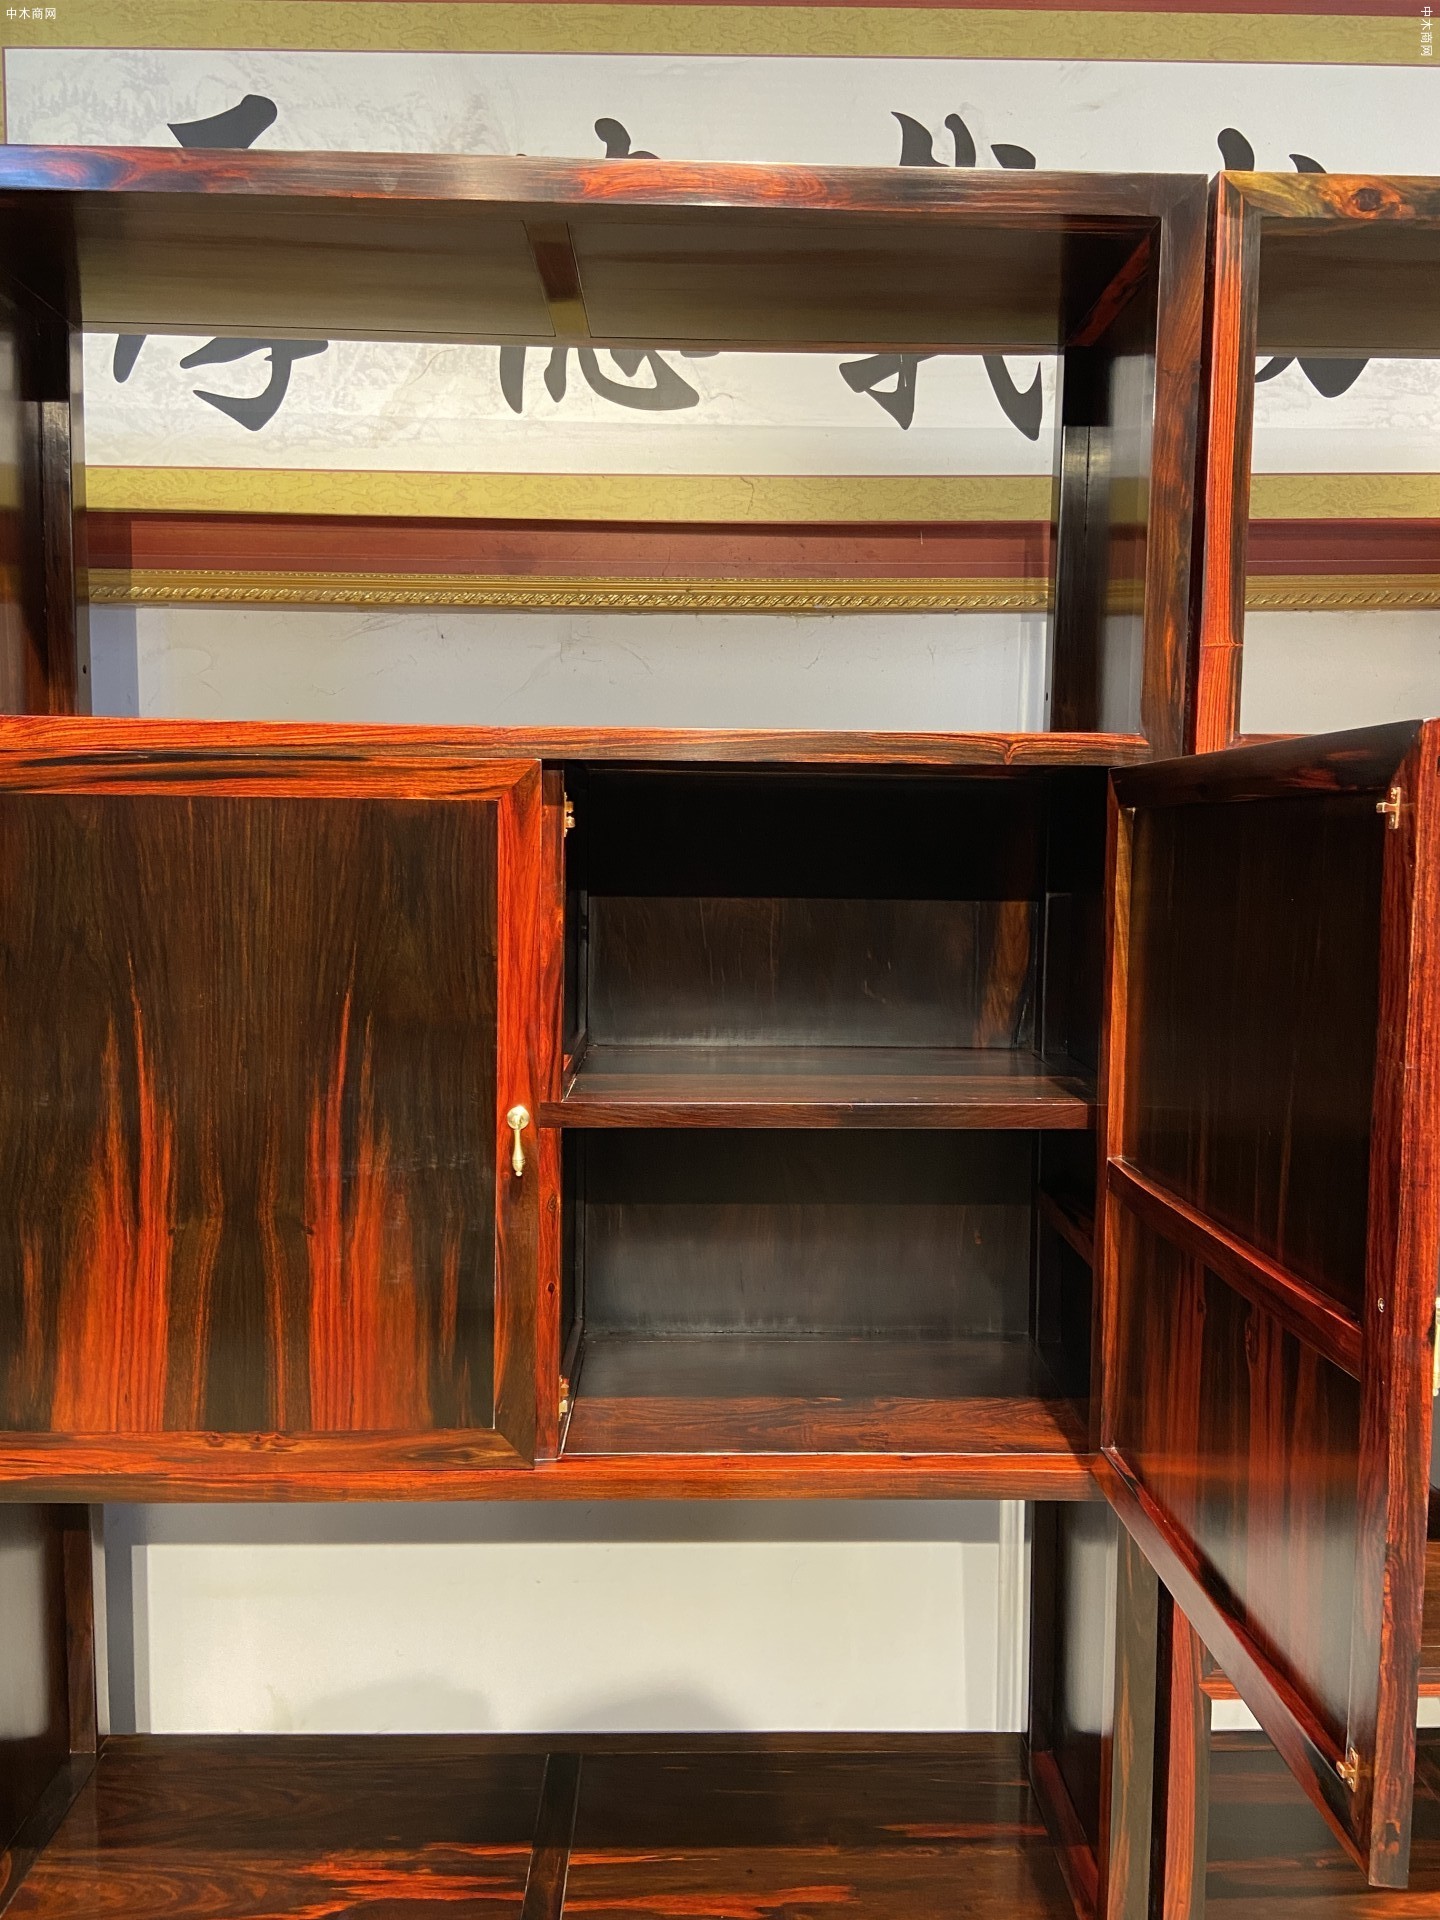 凭祥匠心居红木家具老挝大红酸枝四组合中式书架生产厂家品牌